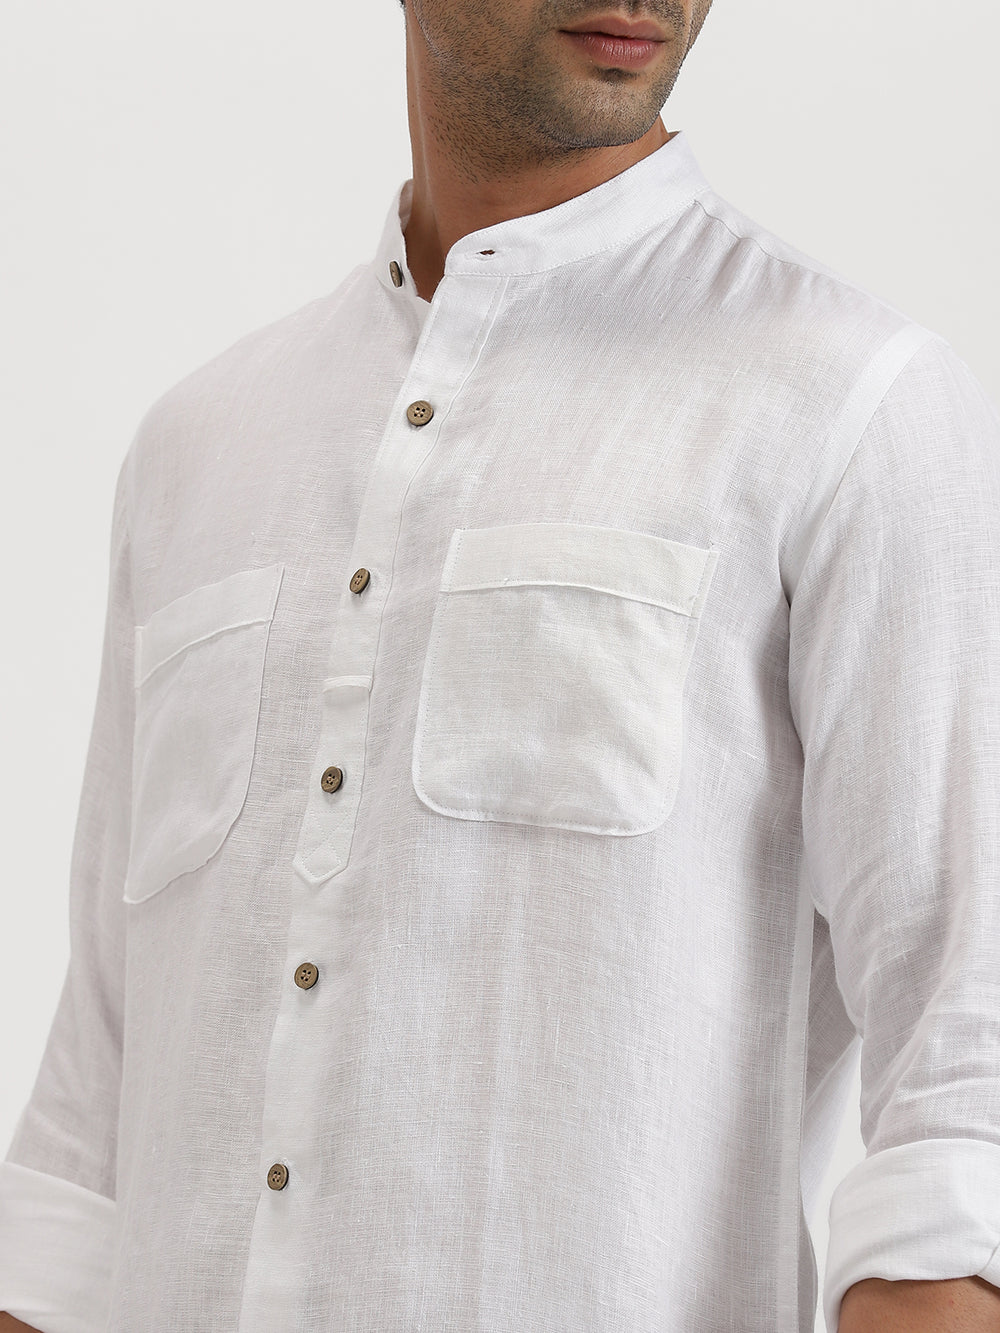 Luca - Pure Linen Double Pocket Full Sleeve Shirt - White